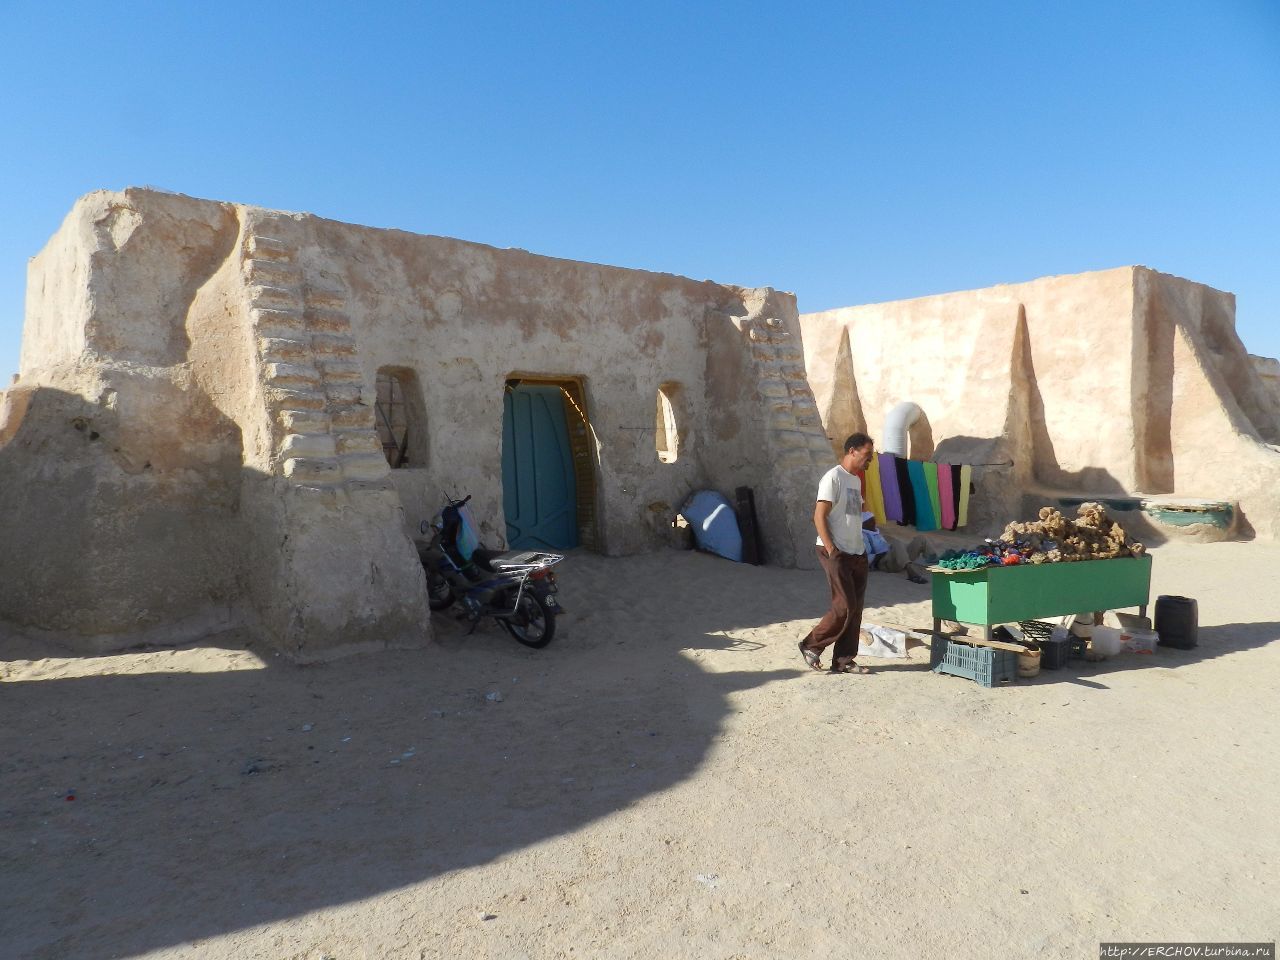 Экскурсия в Сахару. Ч — 6. Мос-Эспе — родина звёздного героя Мос-Эспа (место съемок Звездных Войн), Тунис